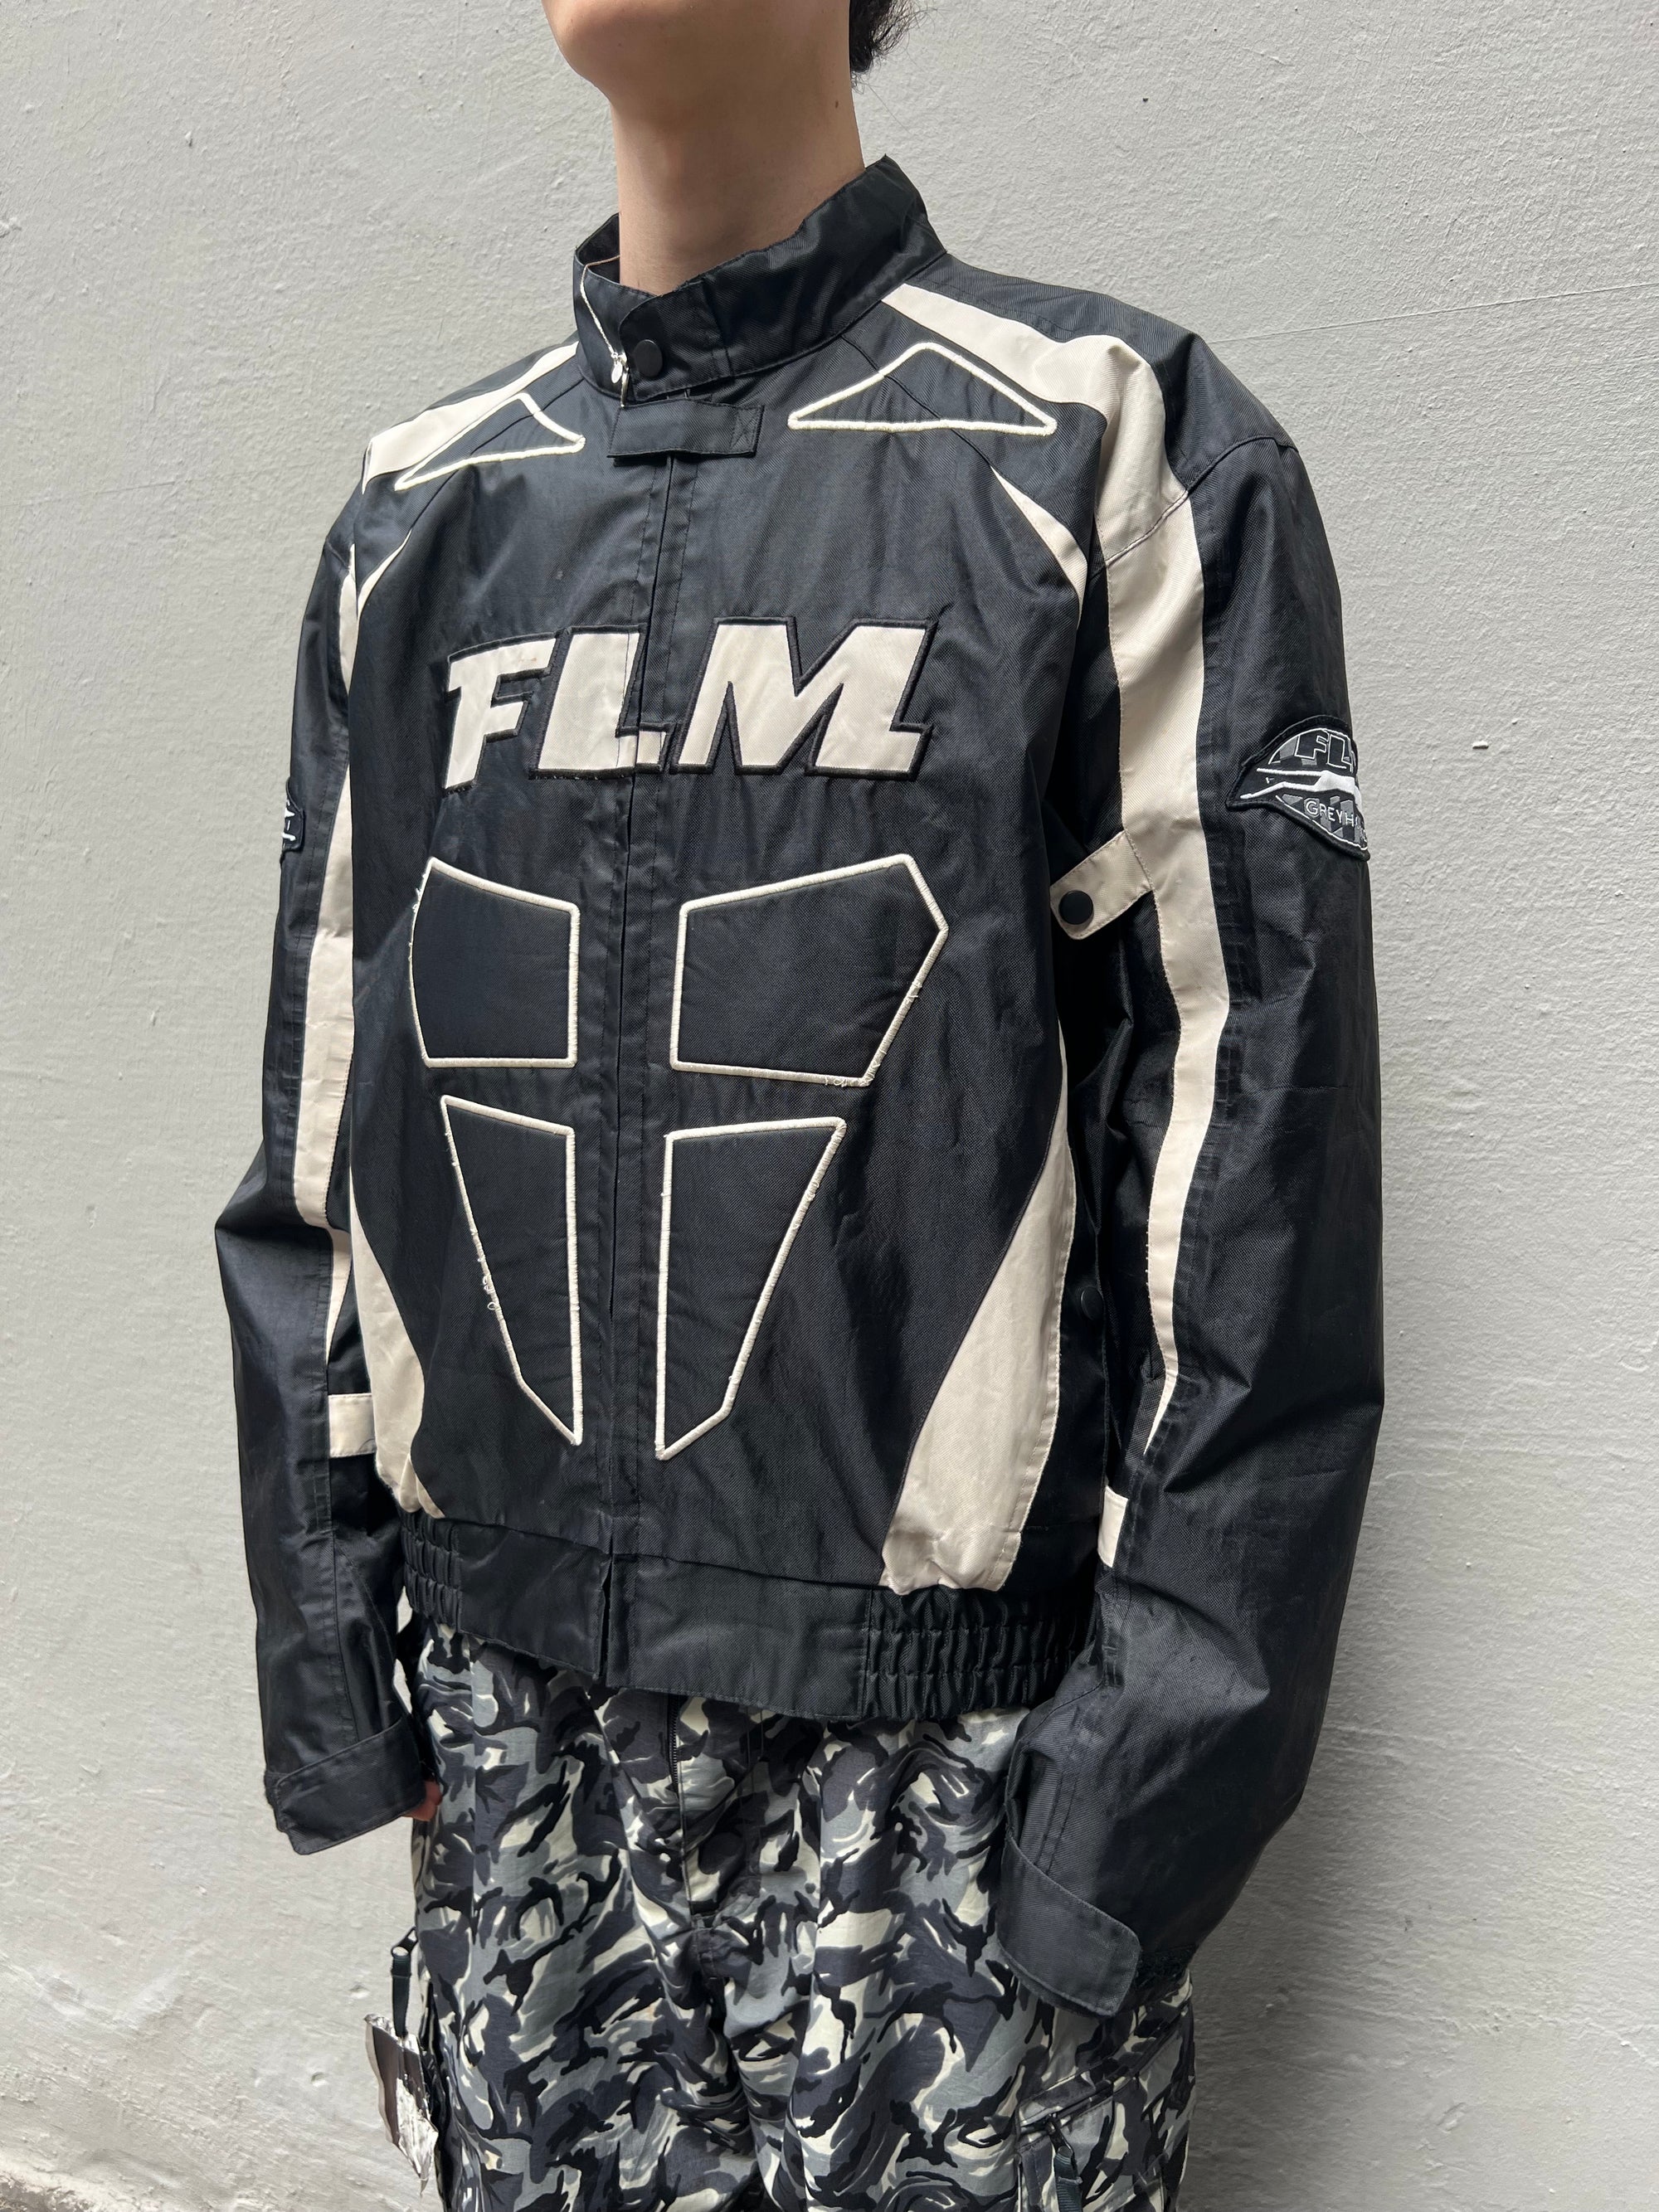 Produkt Bild Vintage FLM Racing Jacket von der Seite